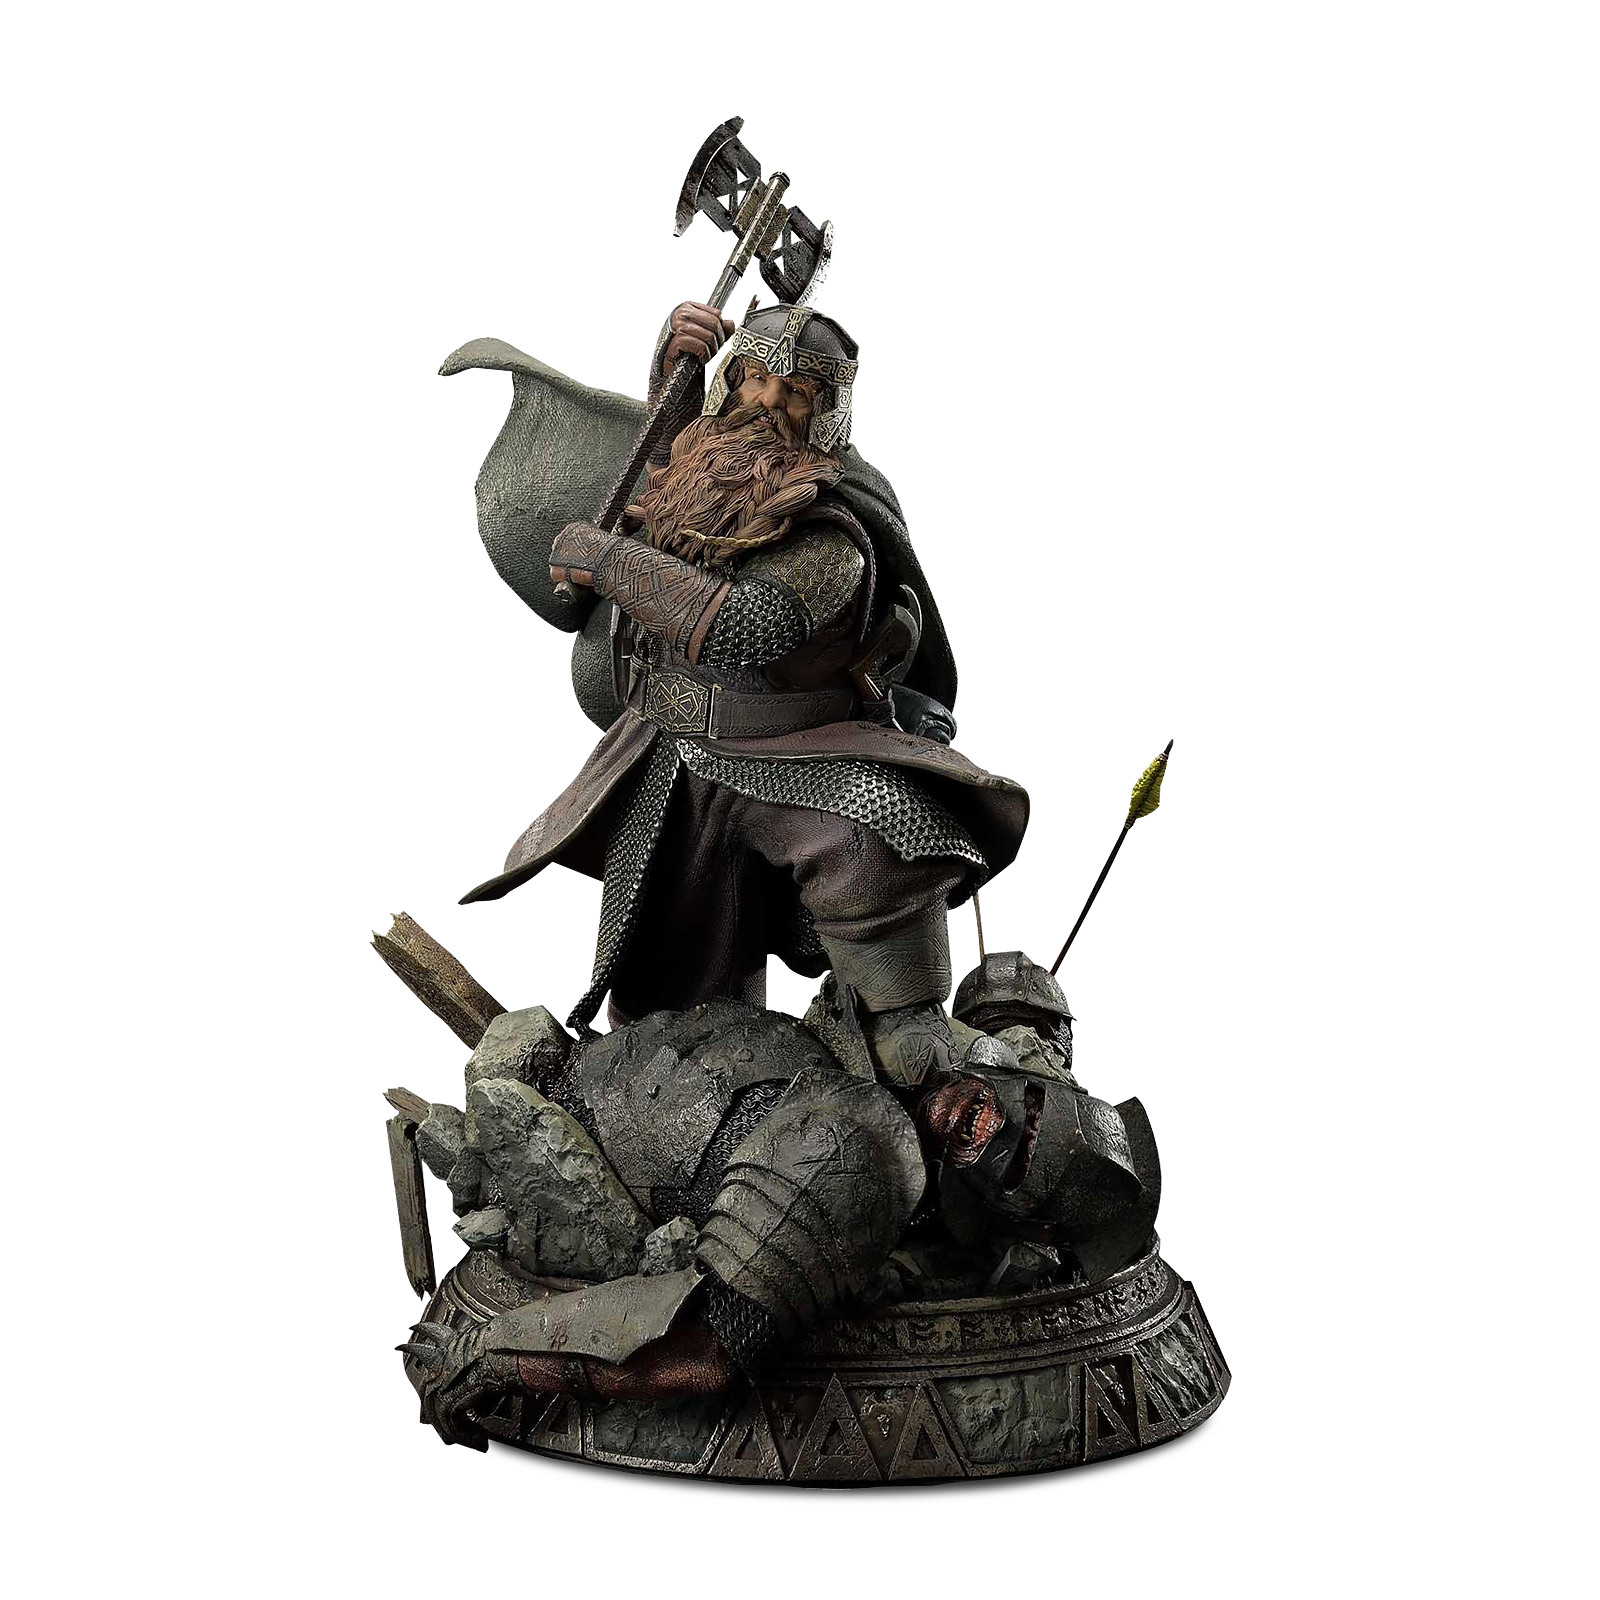 Herr der Ringe - Gimli Premium Sammler Statue Bonus Version